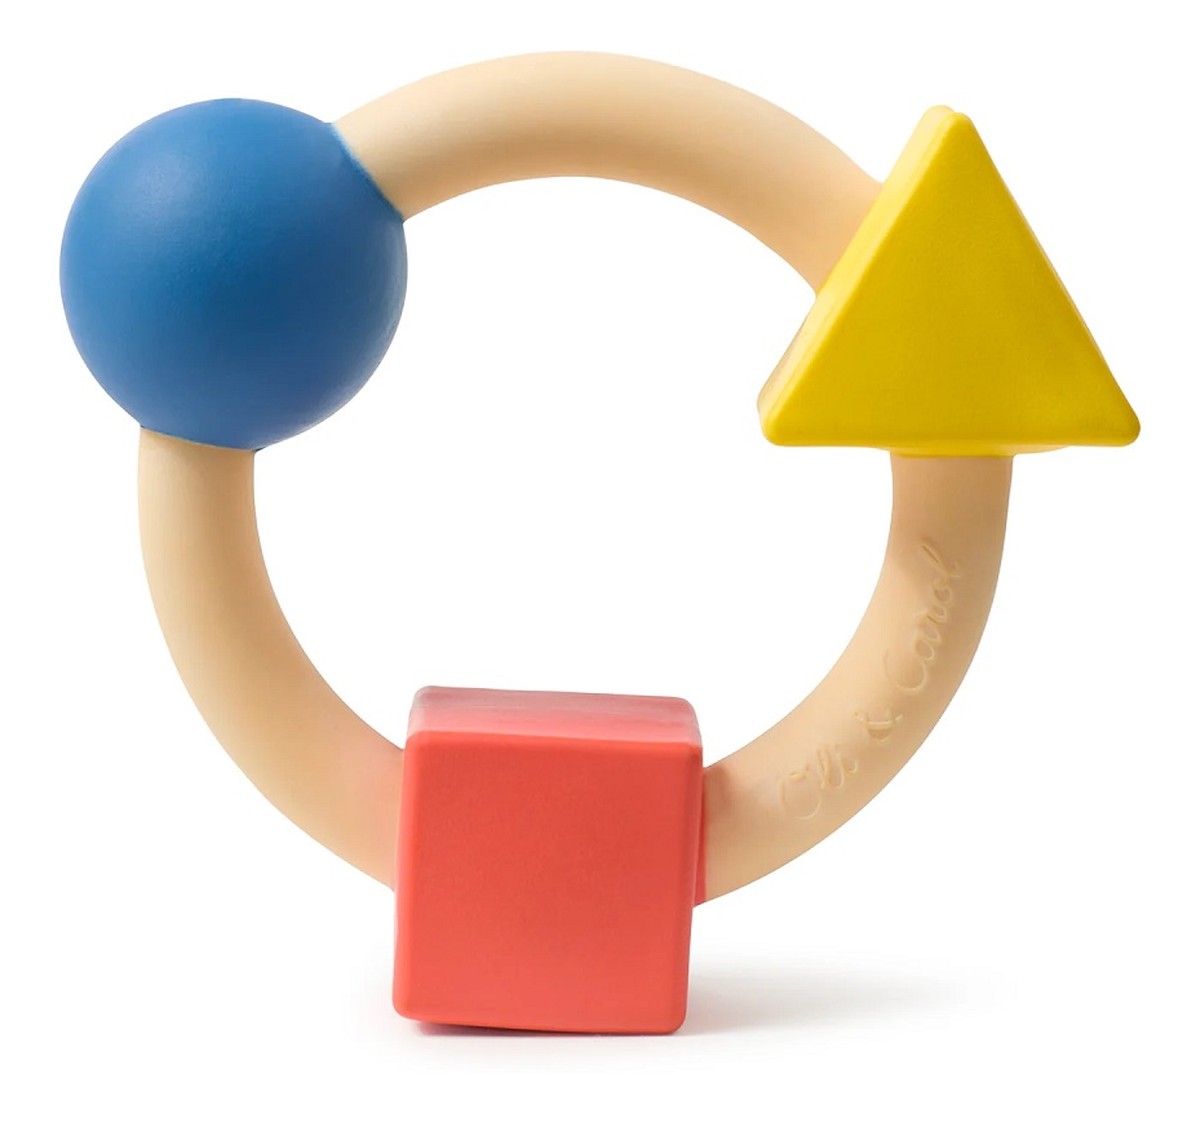 Bauhaus okrągły gryzak figury geometryczne basic